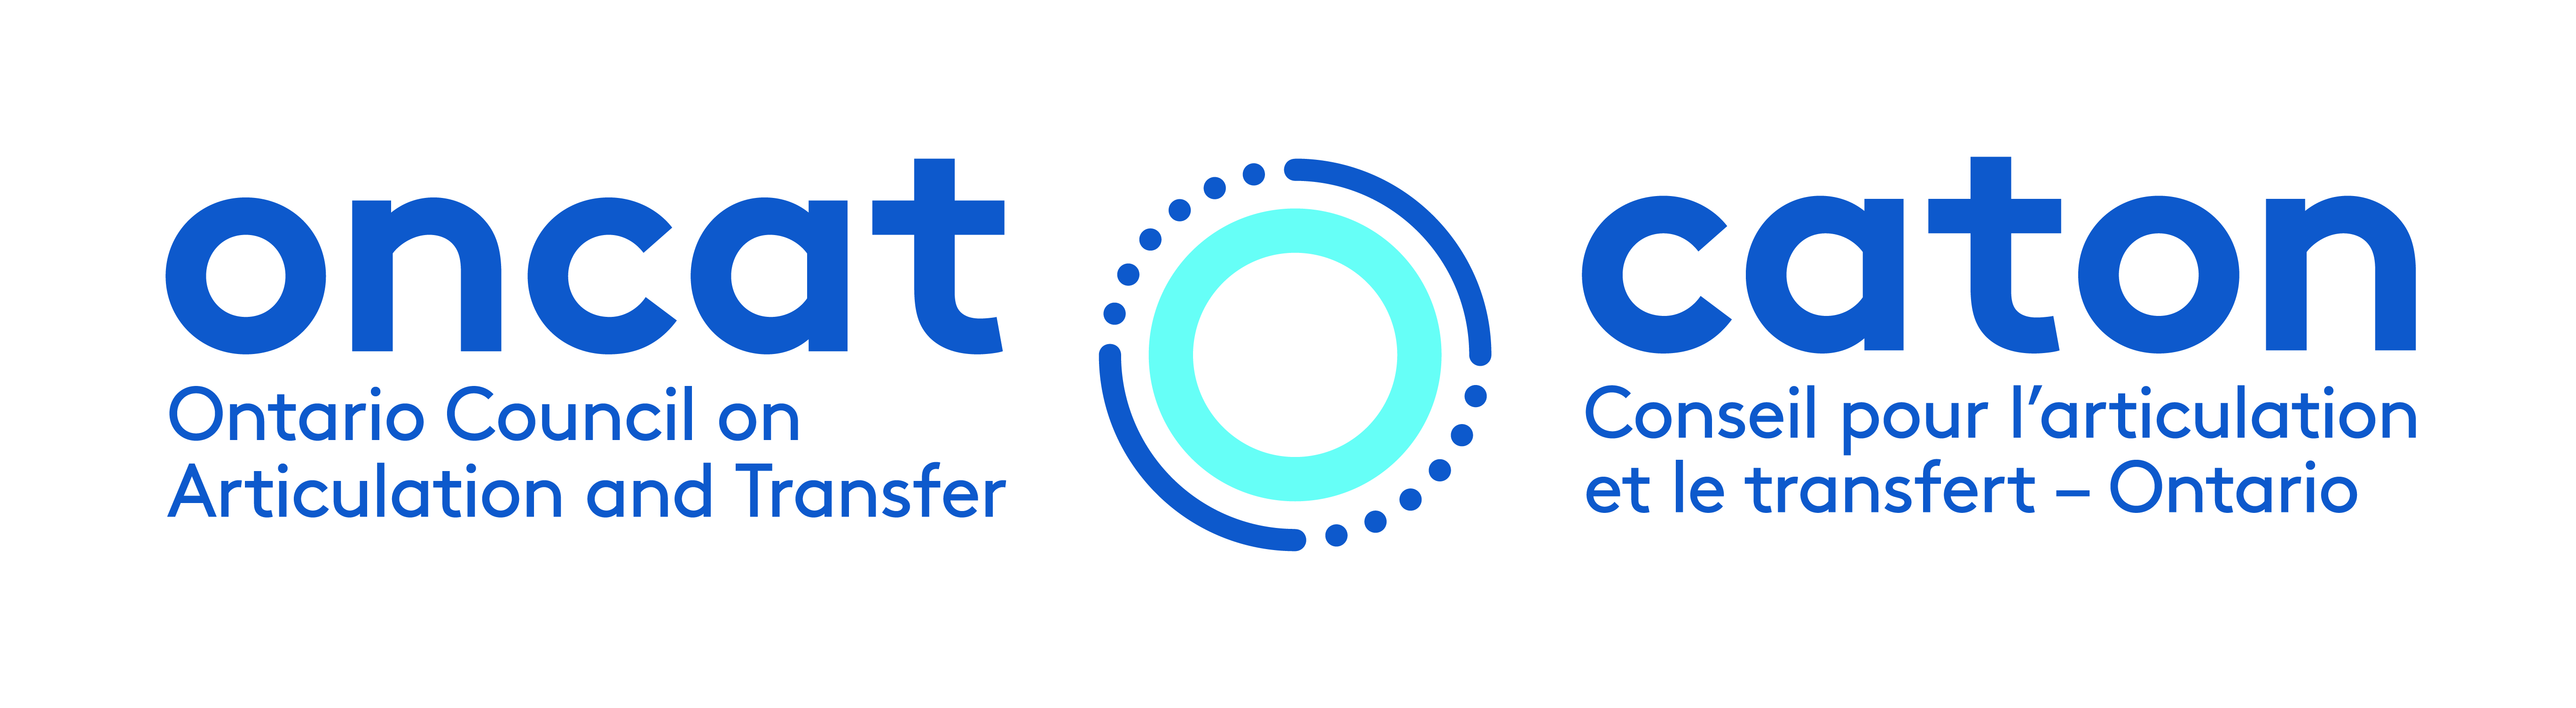 ONCAT logo - bilingual_expanded_colour.jpg